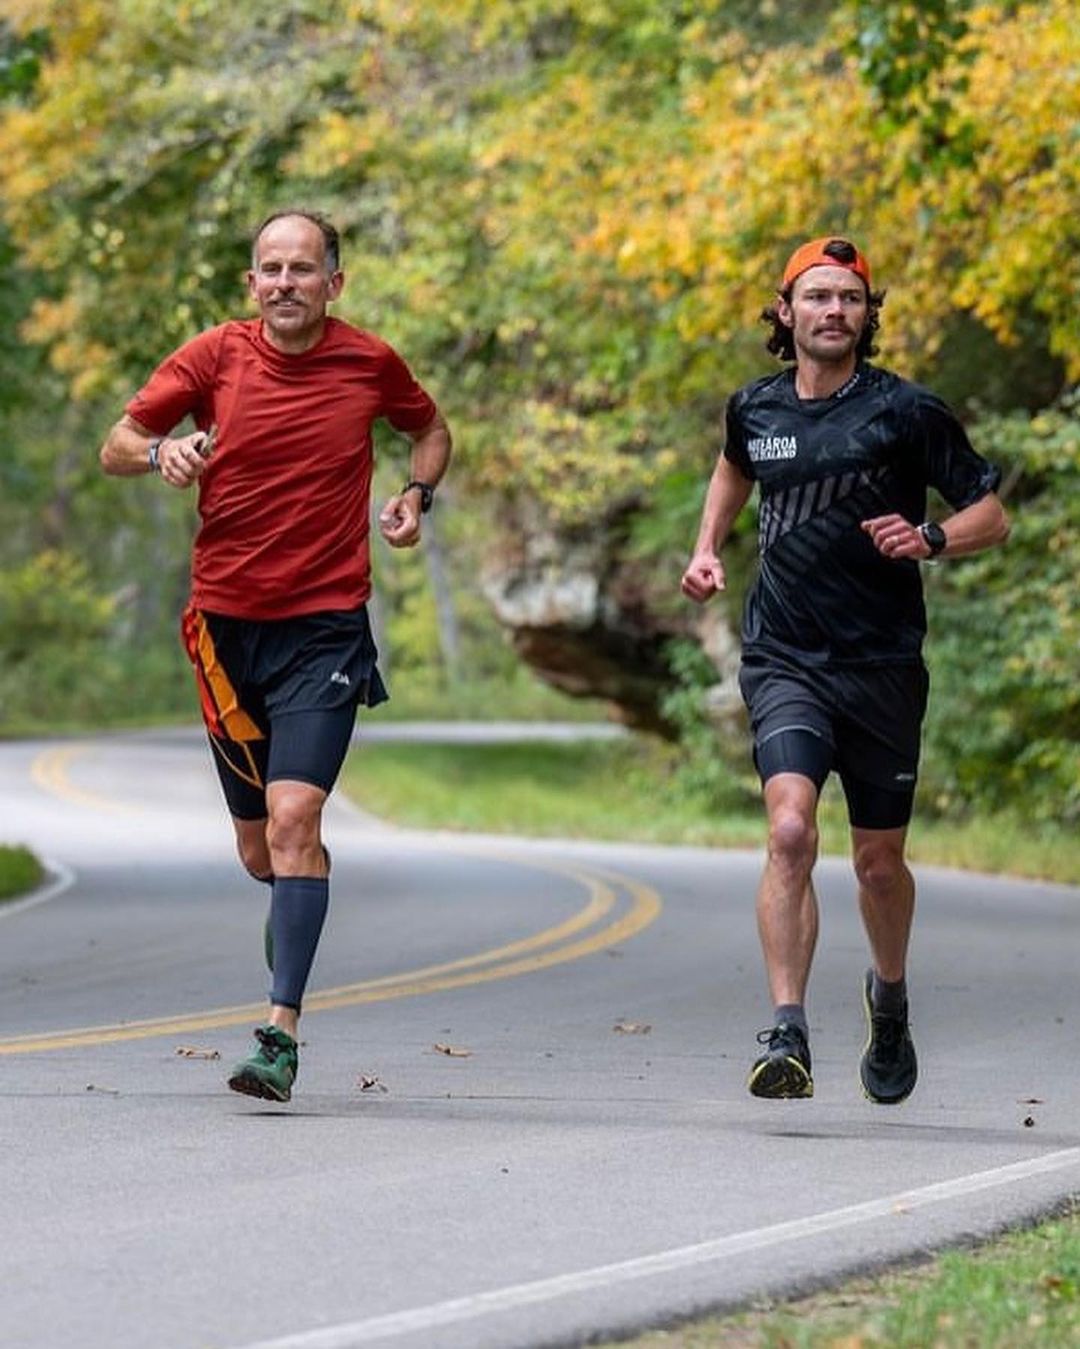 Έτρεξε 450 χιλιόμετρα σε 4.5 μέρες, στο φινάλε έβλεπε δέντρα να του μιλάνε: Απίστευτο ρεκόρ από Καναδό 